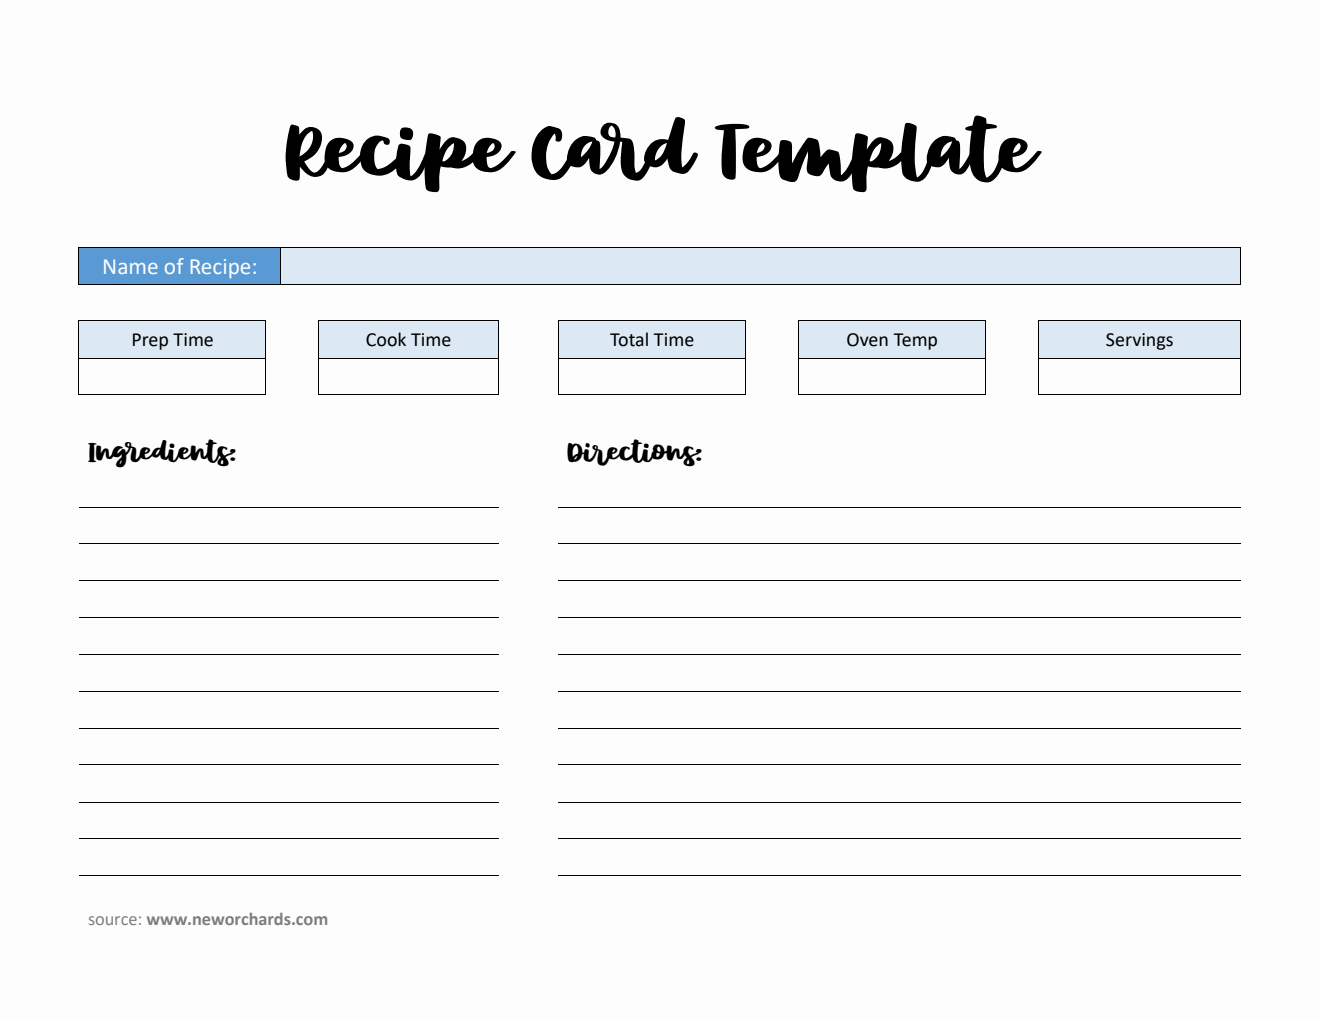 Free Recipe Card Template in PDF Format